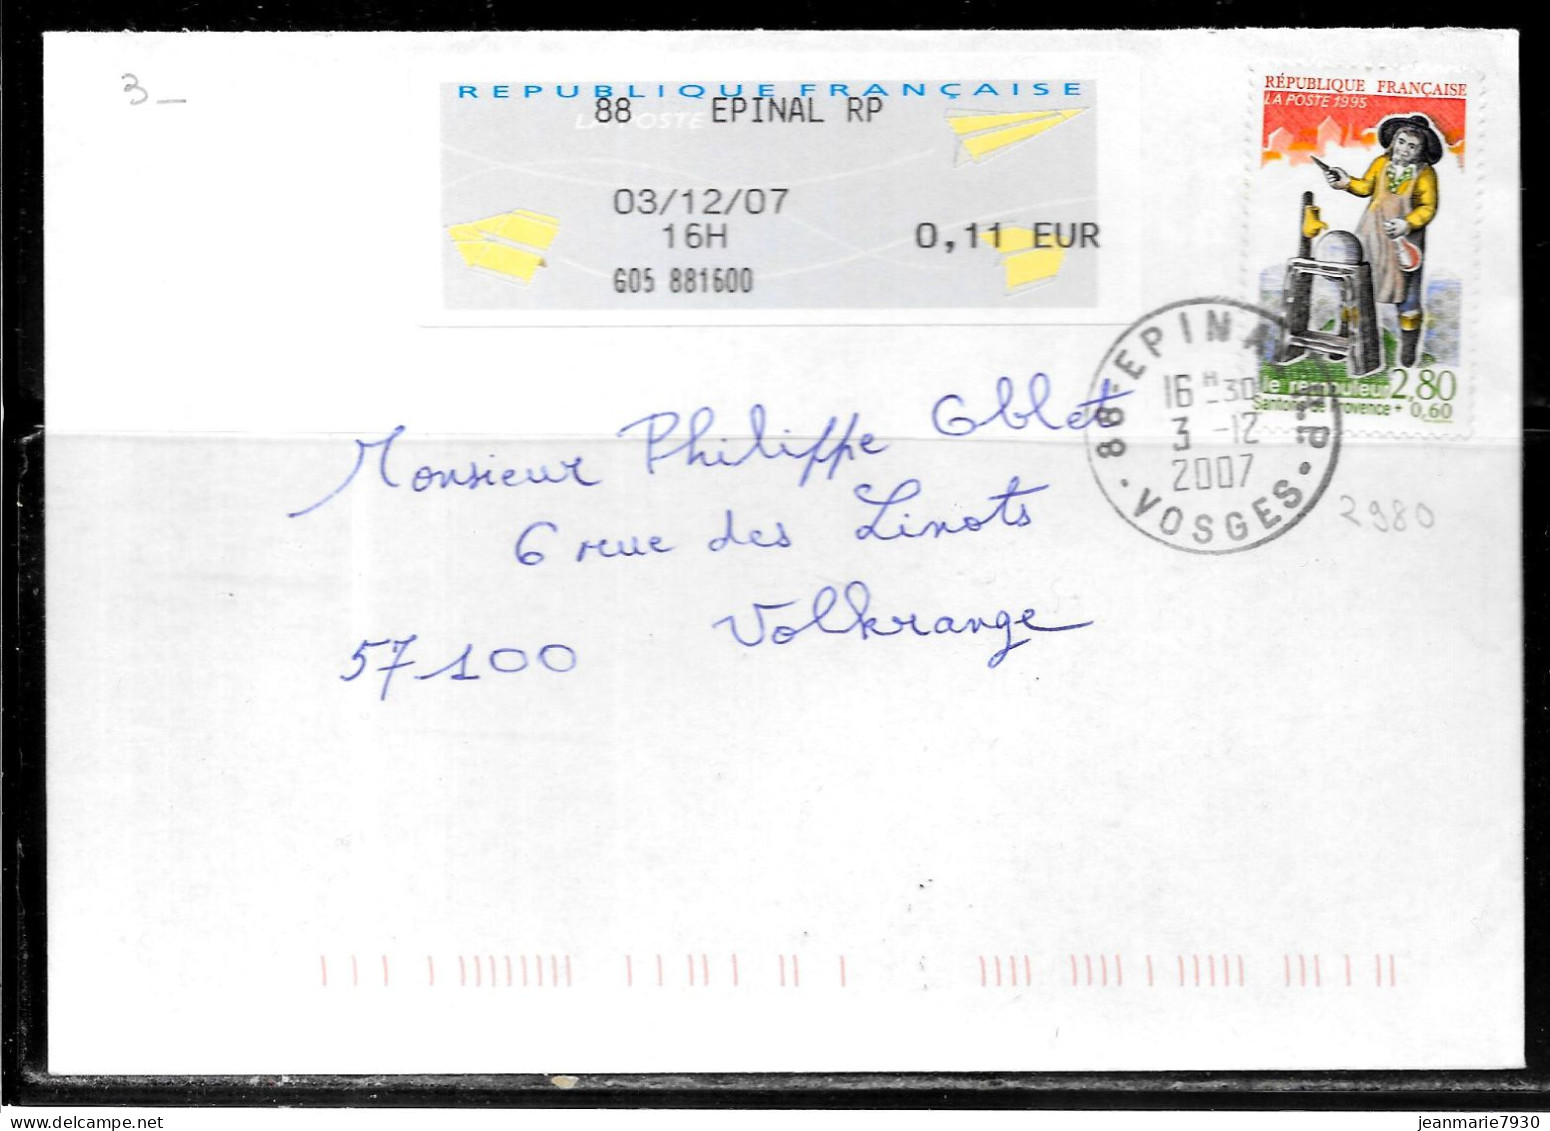 K120 - N° 2980 SUR LETTRE DE EPINAL DU 03/12/07 -VIGNETTE - Commemorative Postmarks